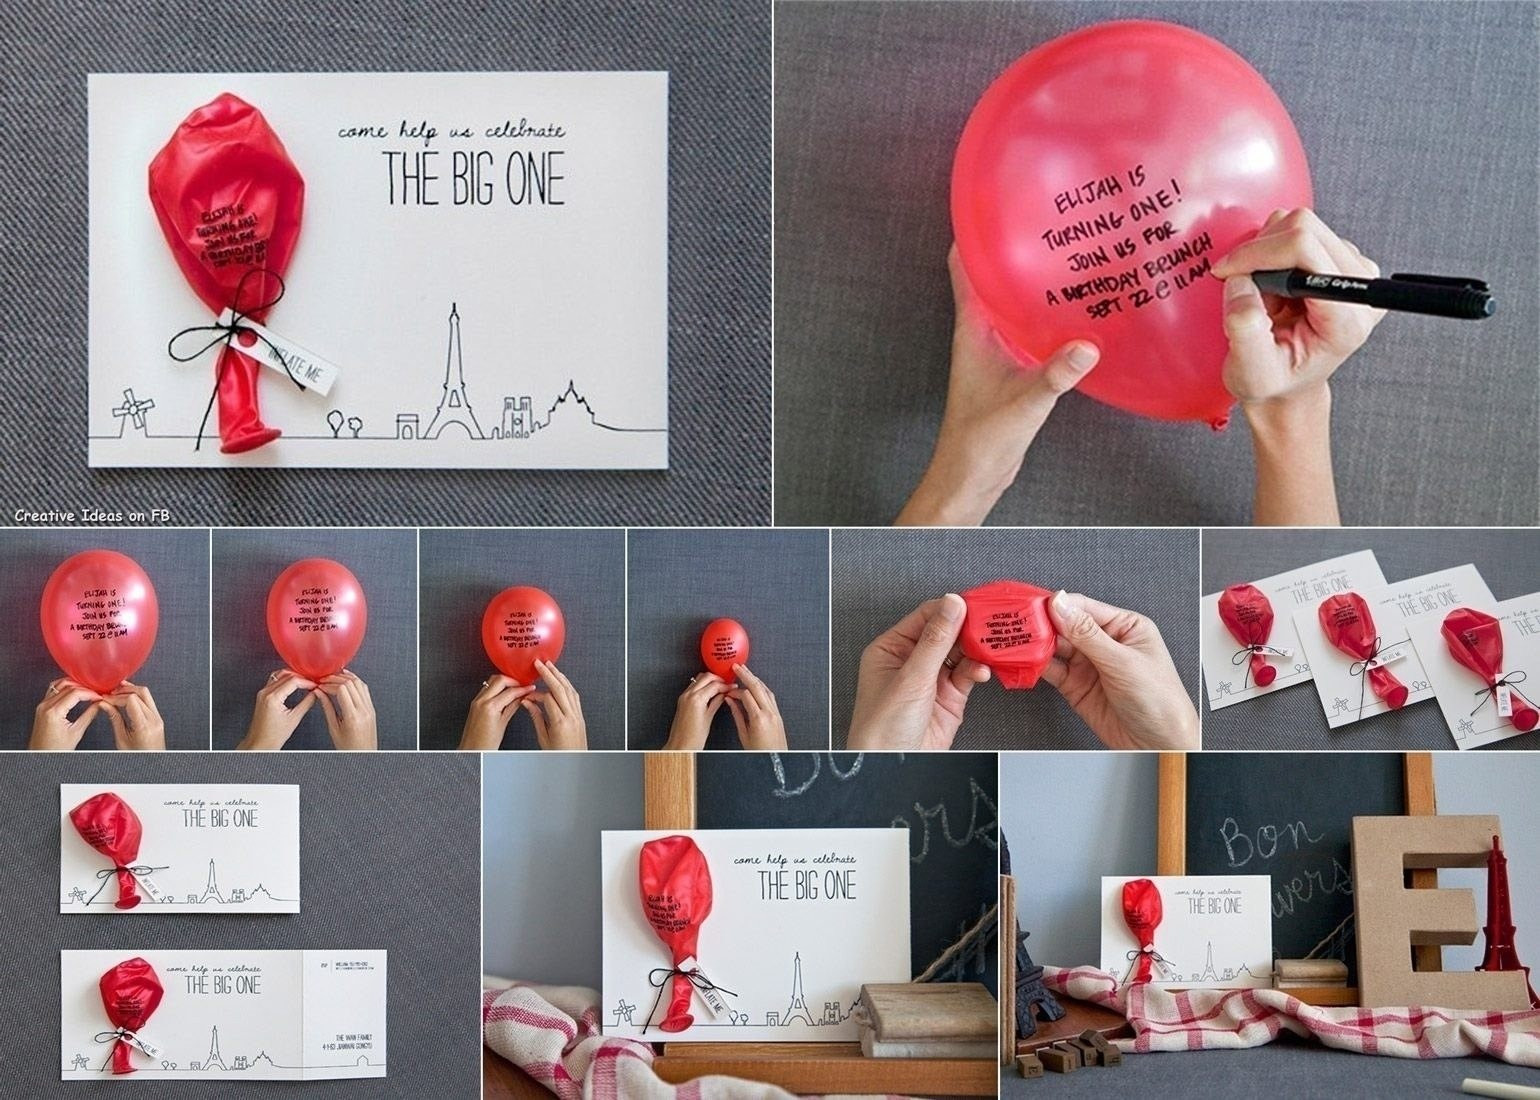 DIY Gift Idea For Boyfriend
 10 Awesome Homemade Birthday Gift Ideas Boyfriend 2020